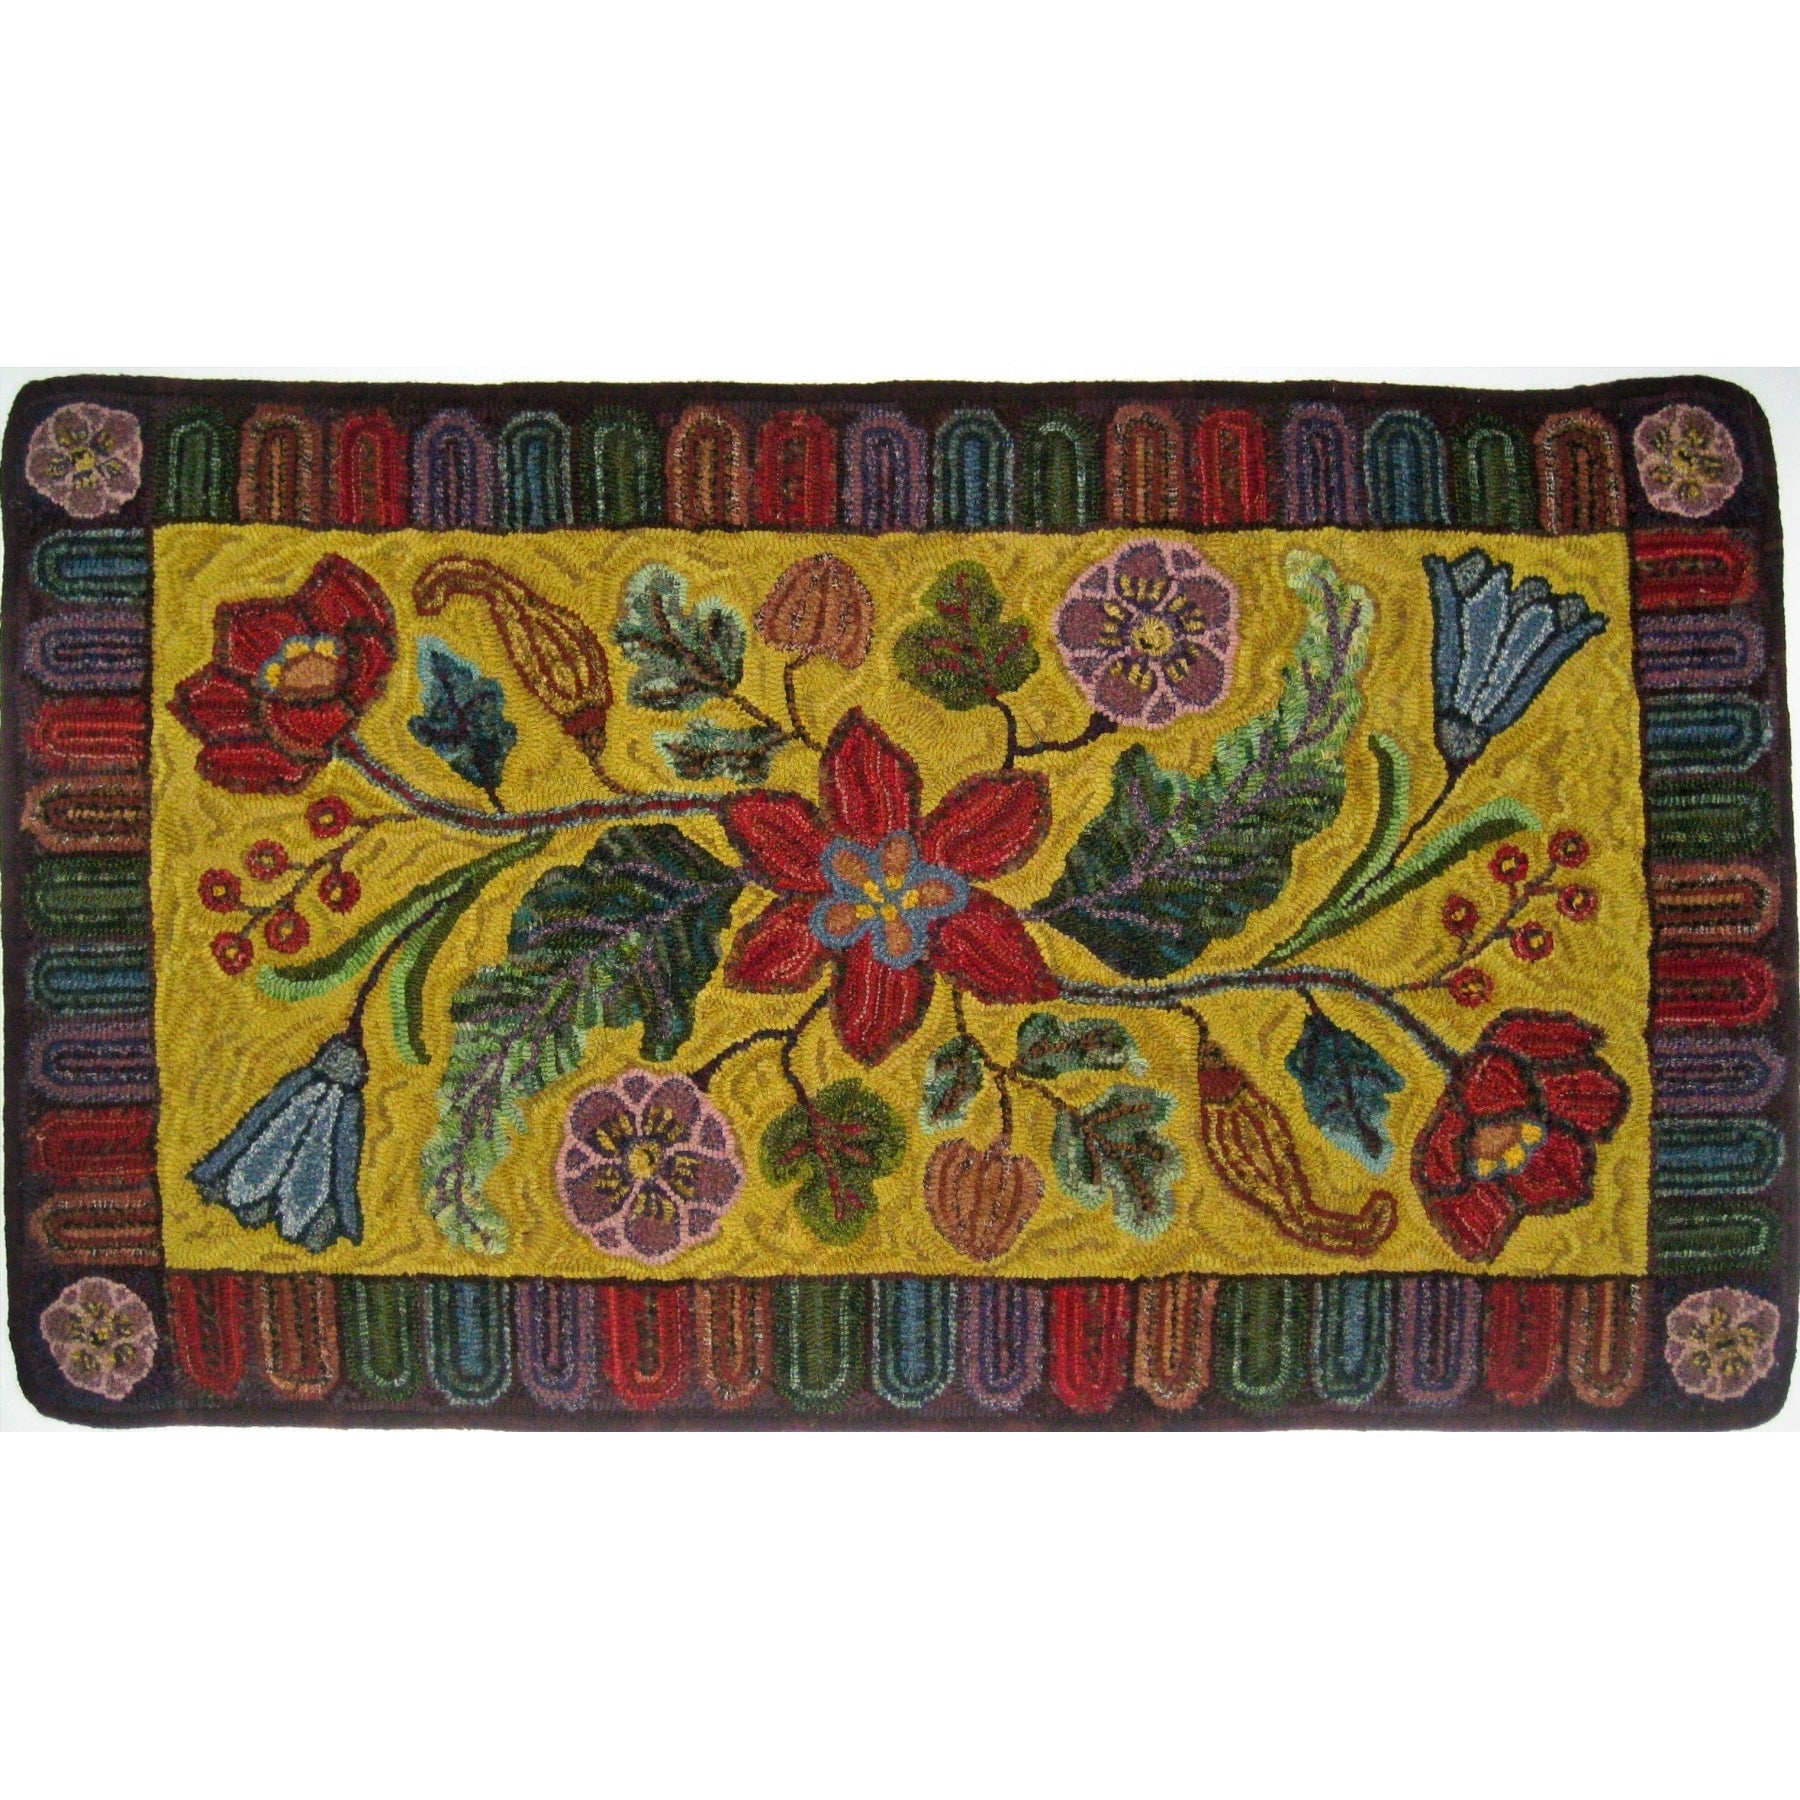 Antique Floral, rug hooked by John Leonard